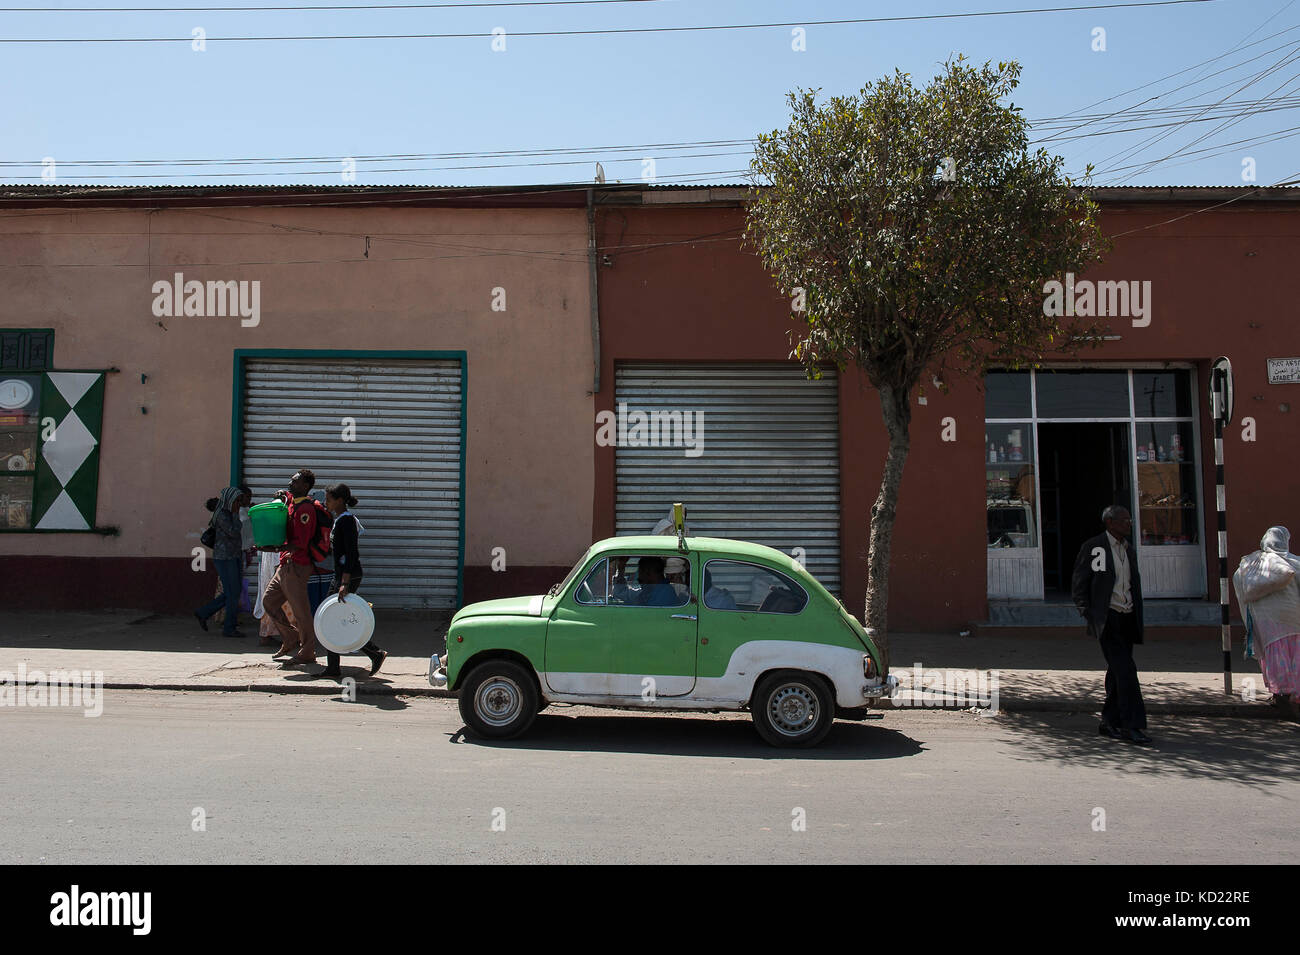 Auto-école dans les normas d'en Asmara. Février 2013. Escuela de autos en las calles de Asmara. Febrero de 2013. Foto de stock